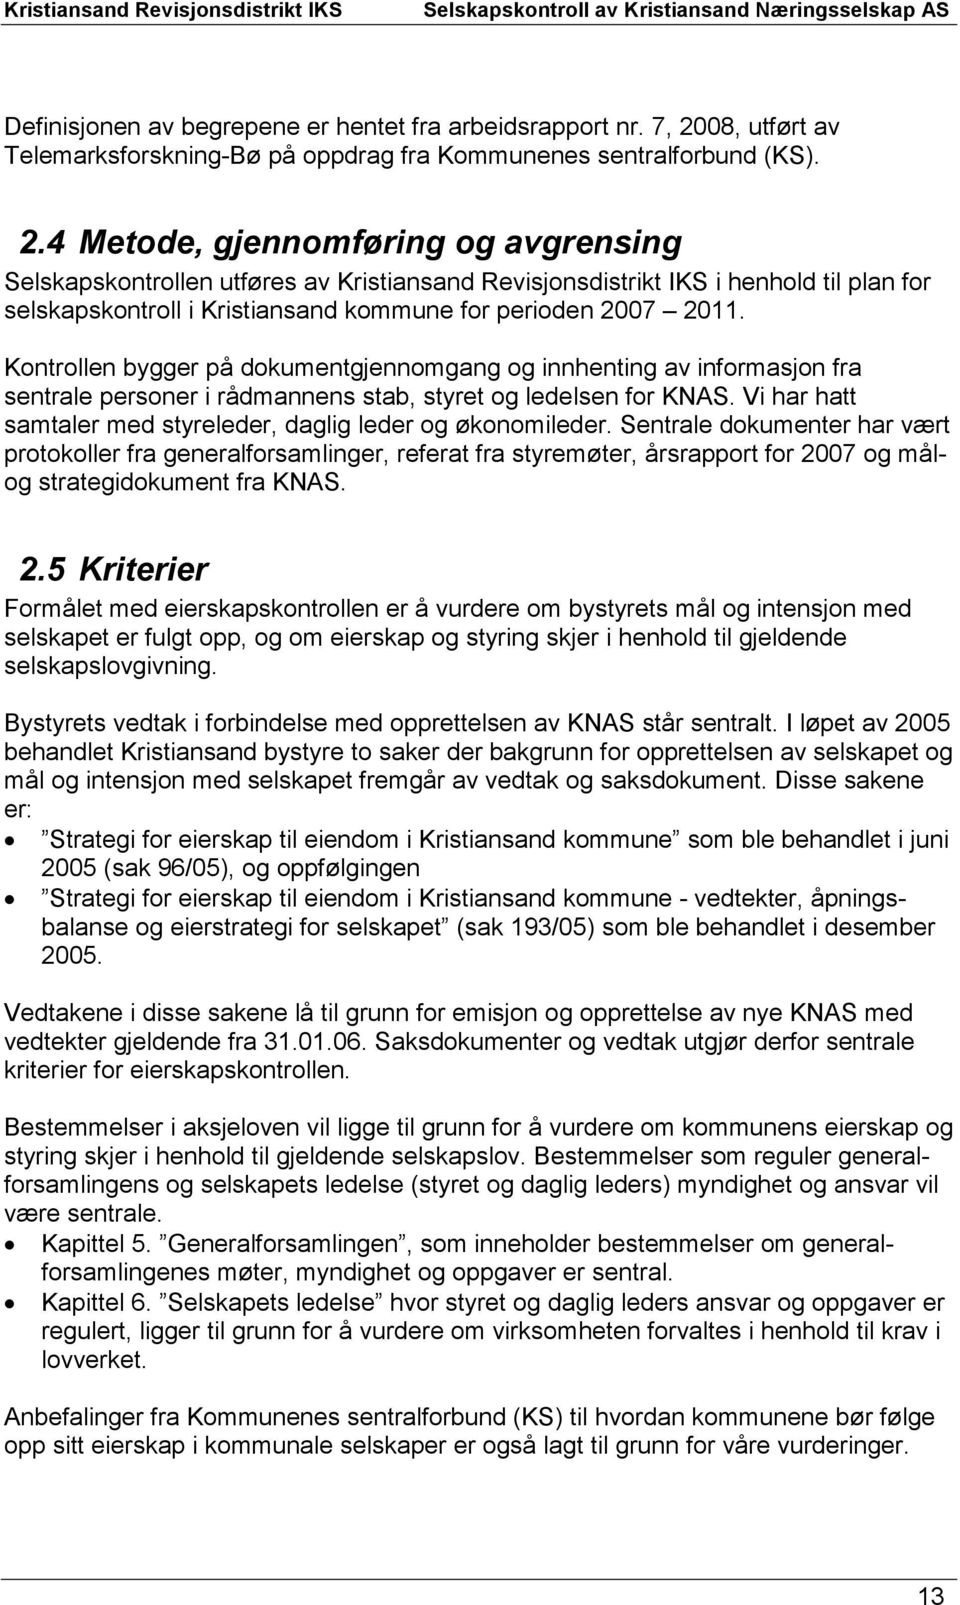 4 Metode, gjennomføring og avgrensing Selskapskontrollen utføres av Kristiansand Revisjonsdistrikt IKS i henhold til plan for selskapskontroll i Kristiansand kommune for perioden 2007 2011.